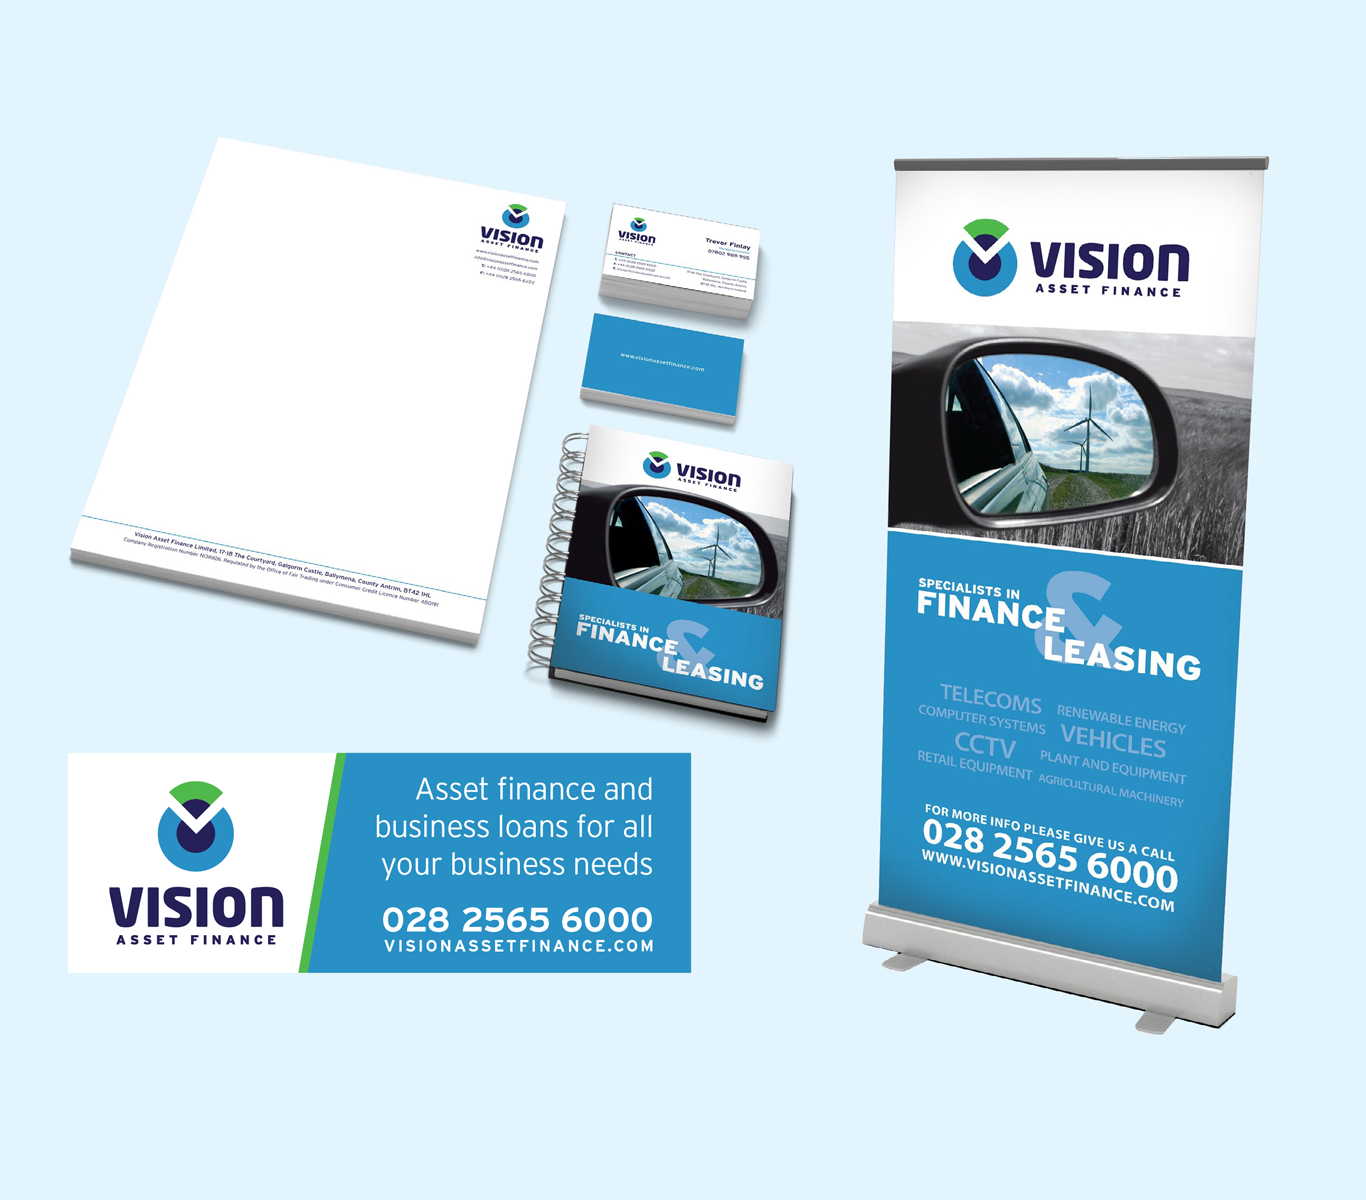 Vision Asset Finance